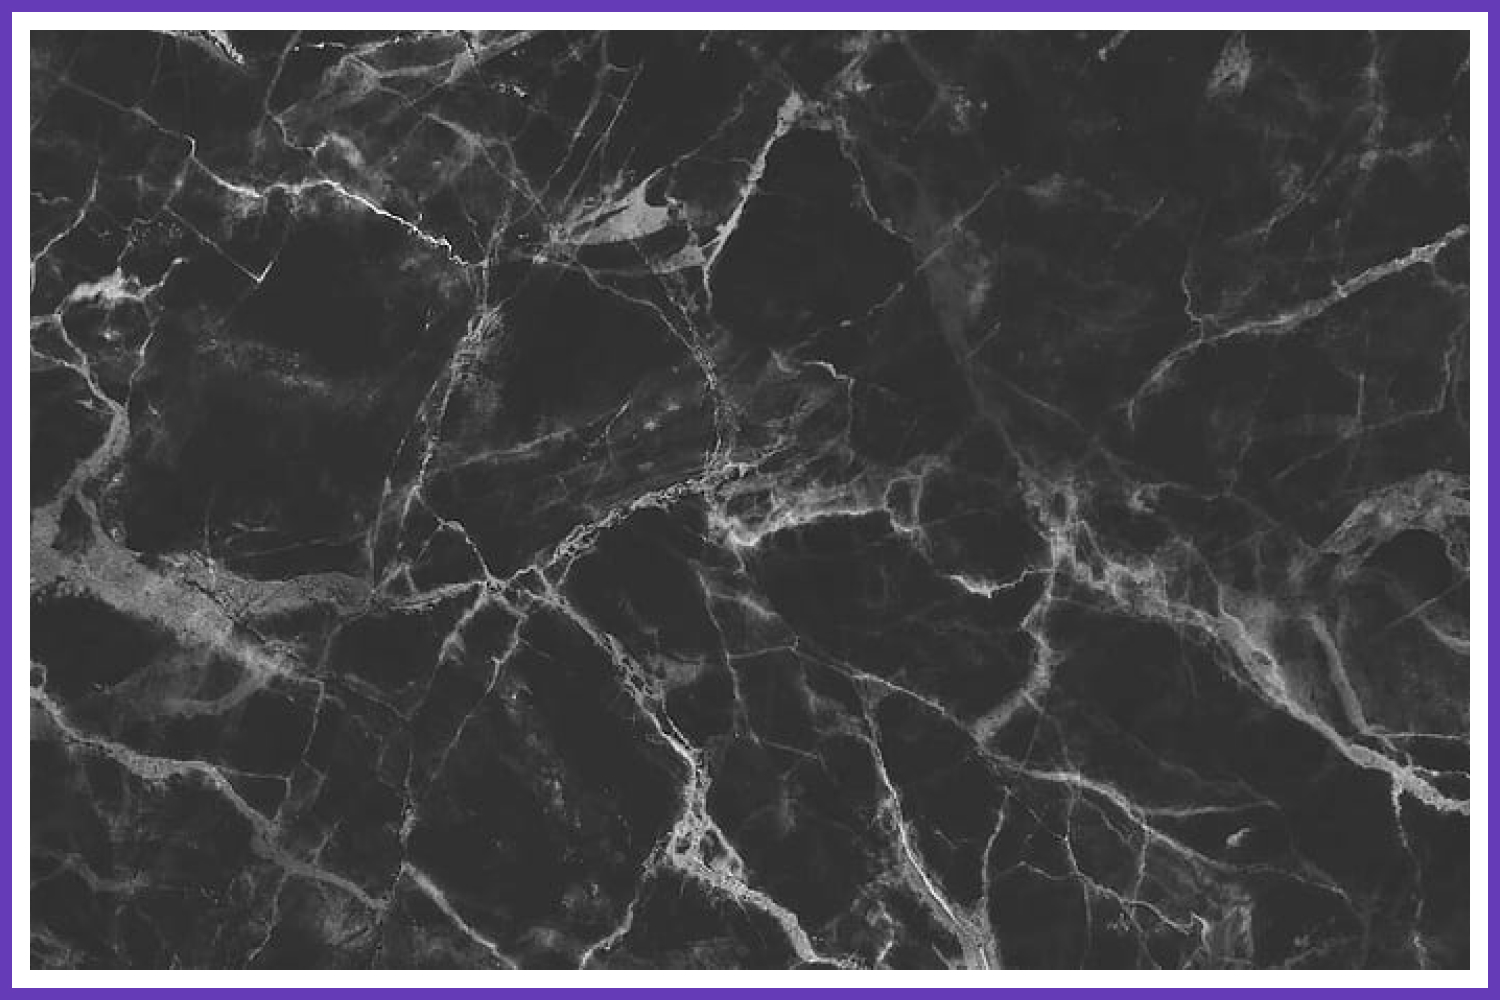 Plain black marble textures.